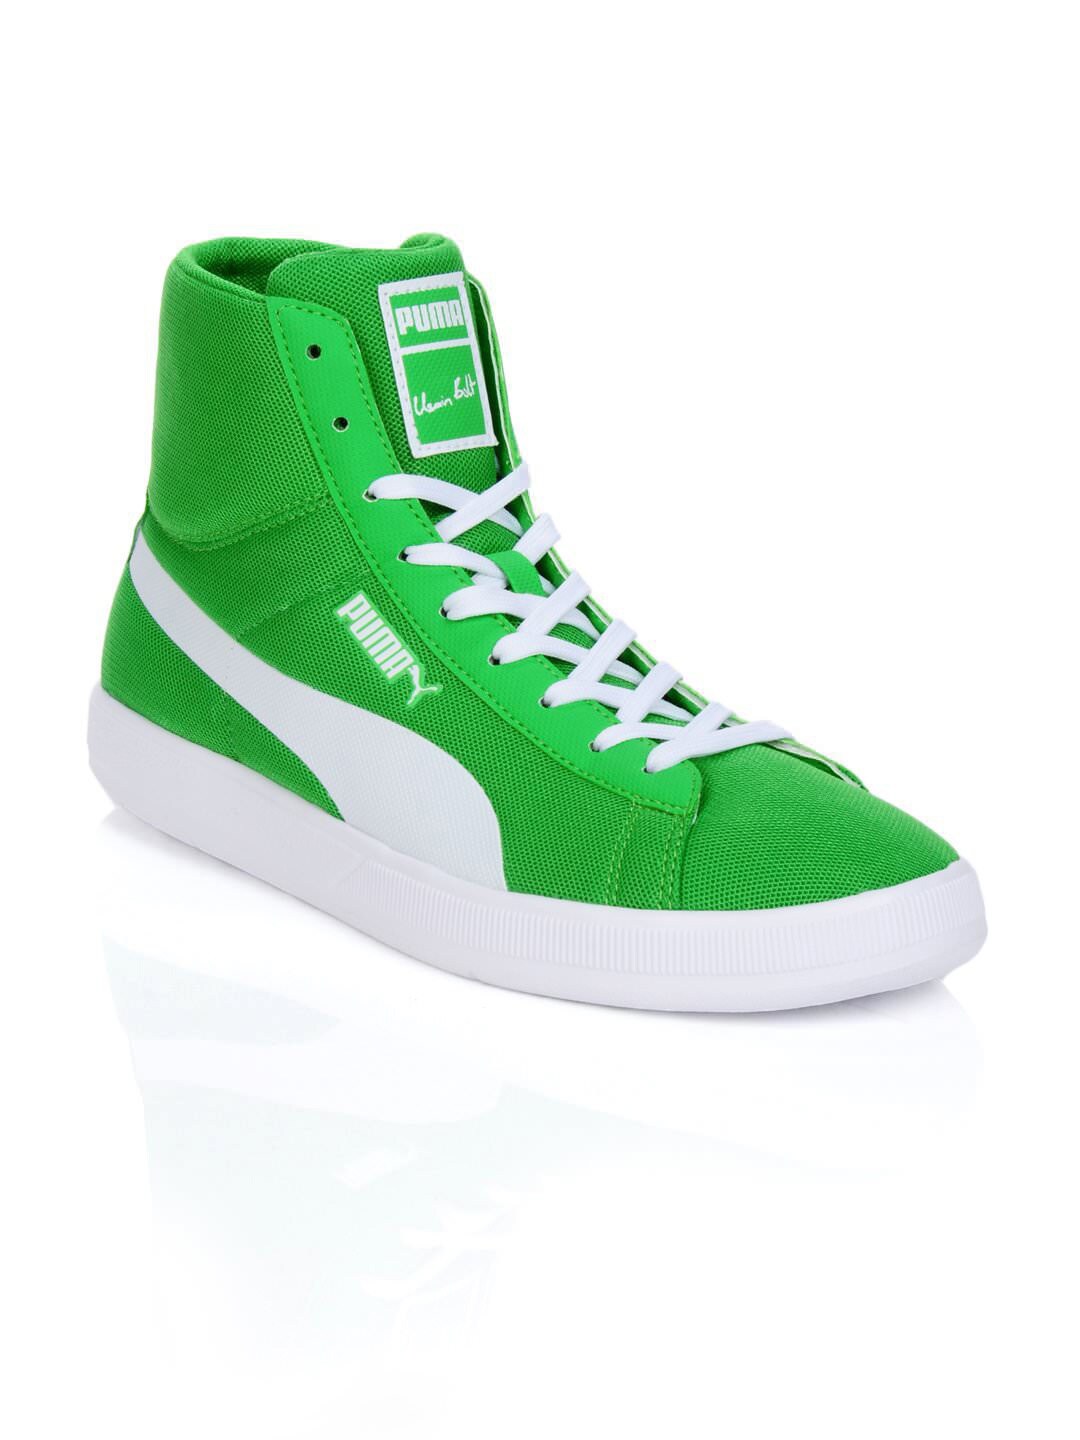 Puma Men Bolt Lite Green Shoes